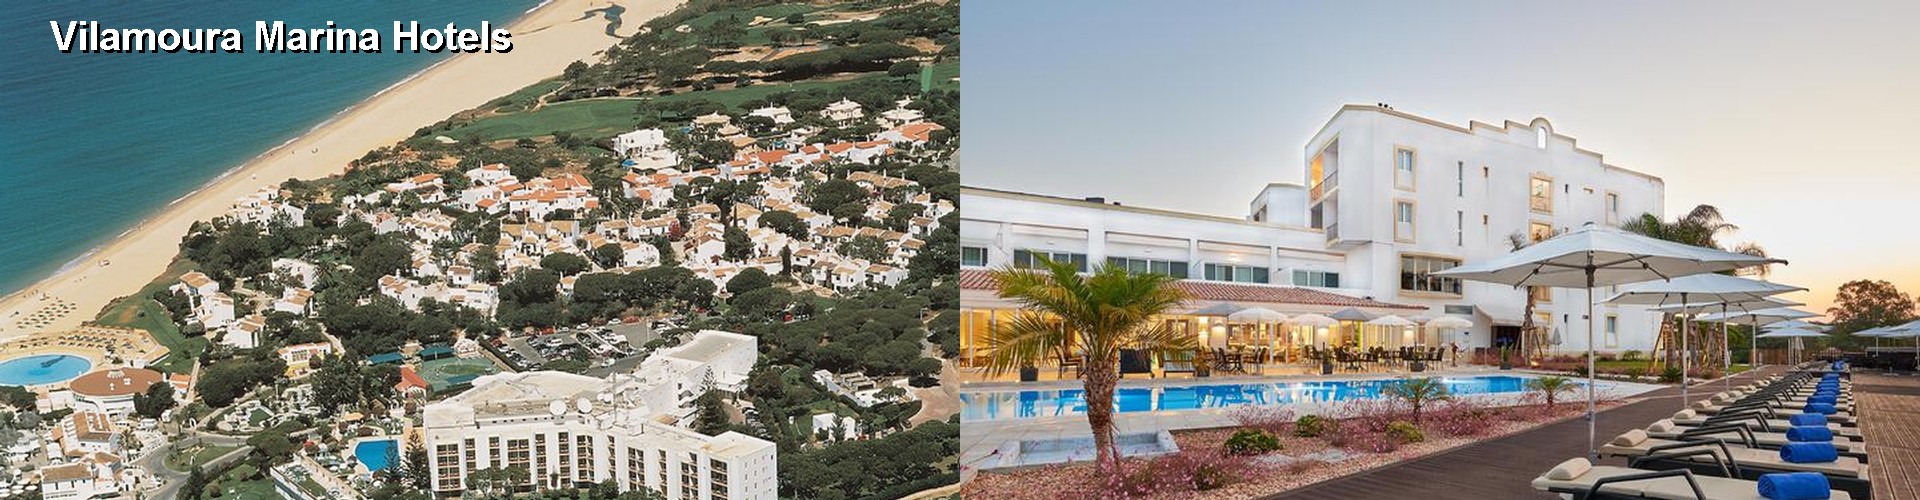 5 Best Hotels near Vilamoura Marina